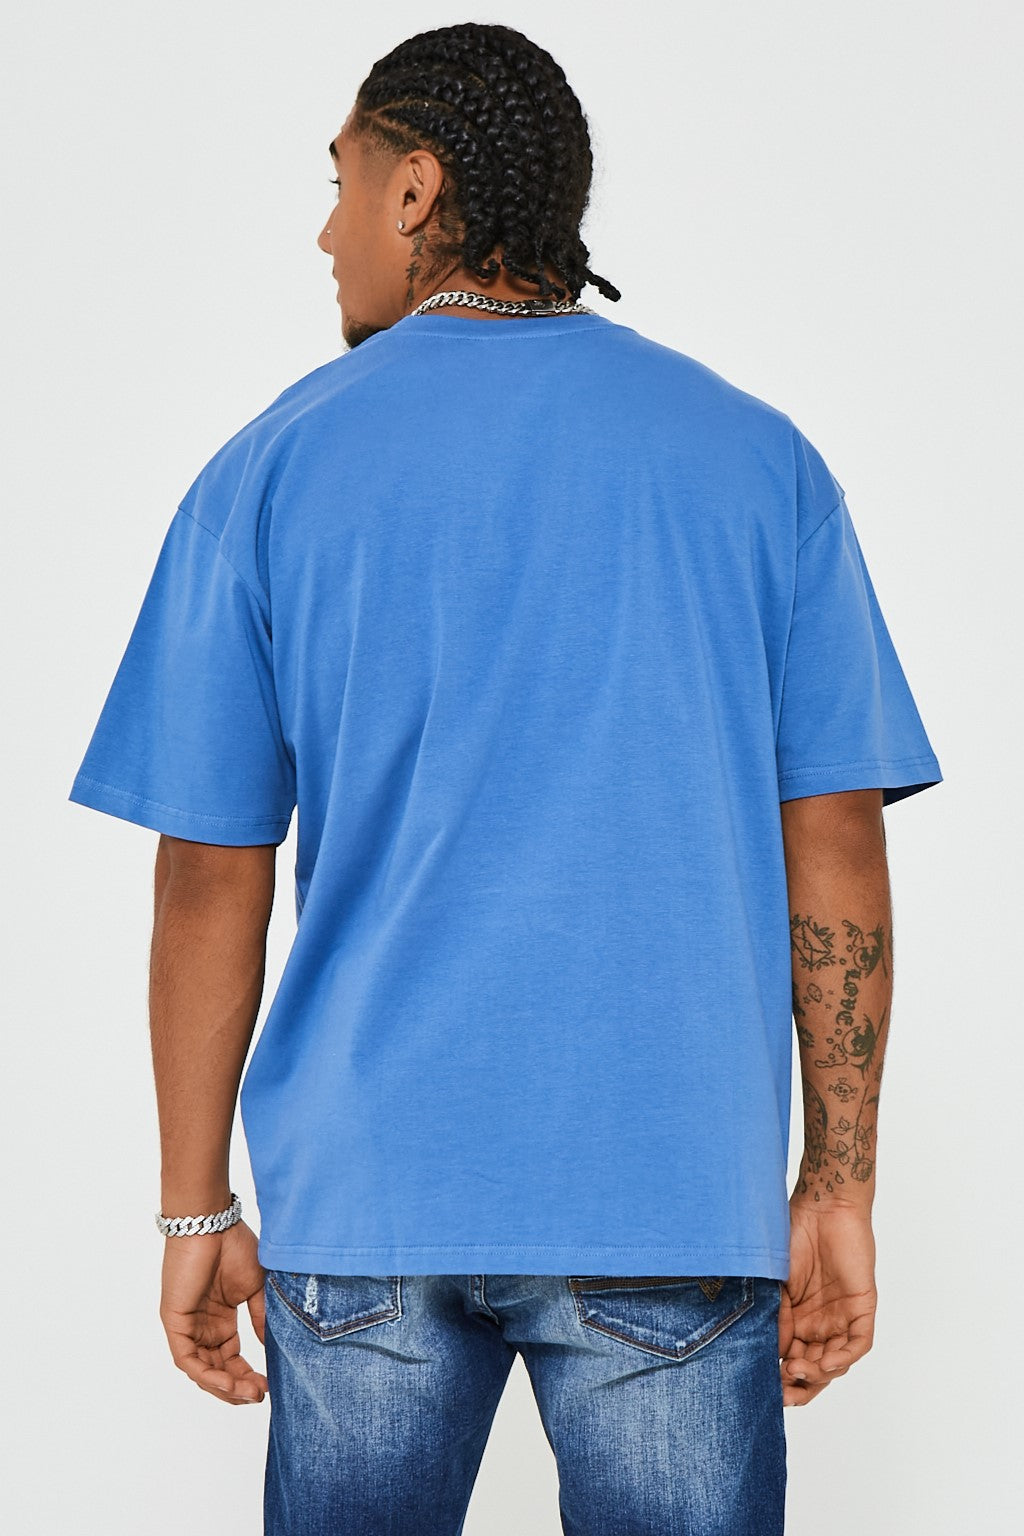 James Street Oversized T-Shirt - Federal Blue